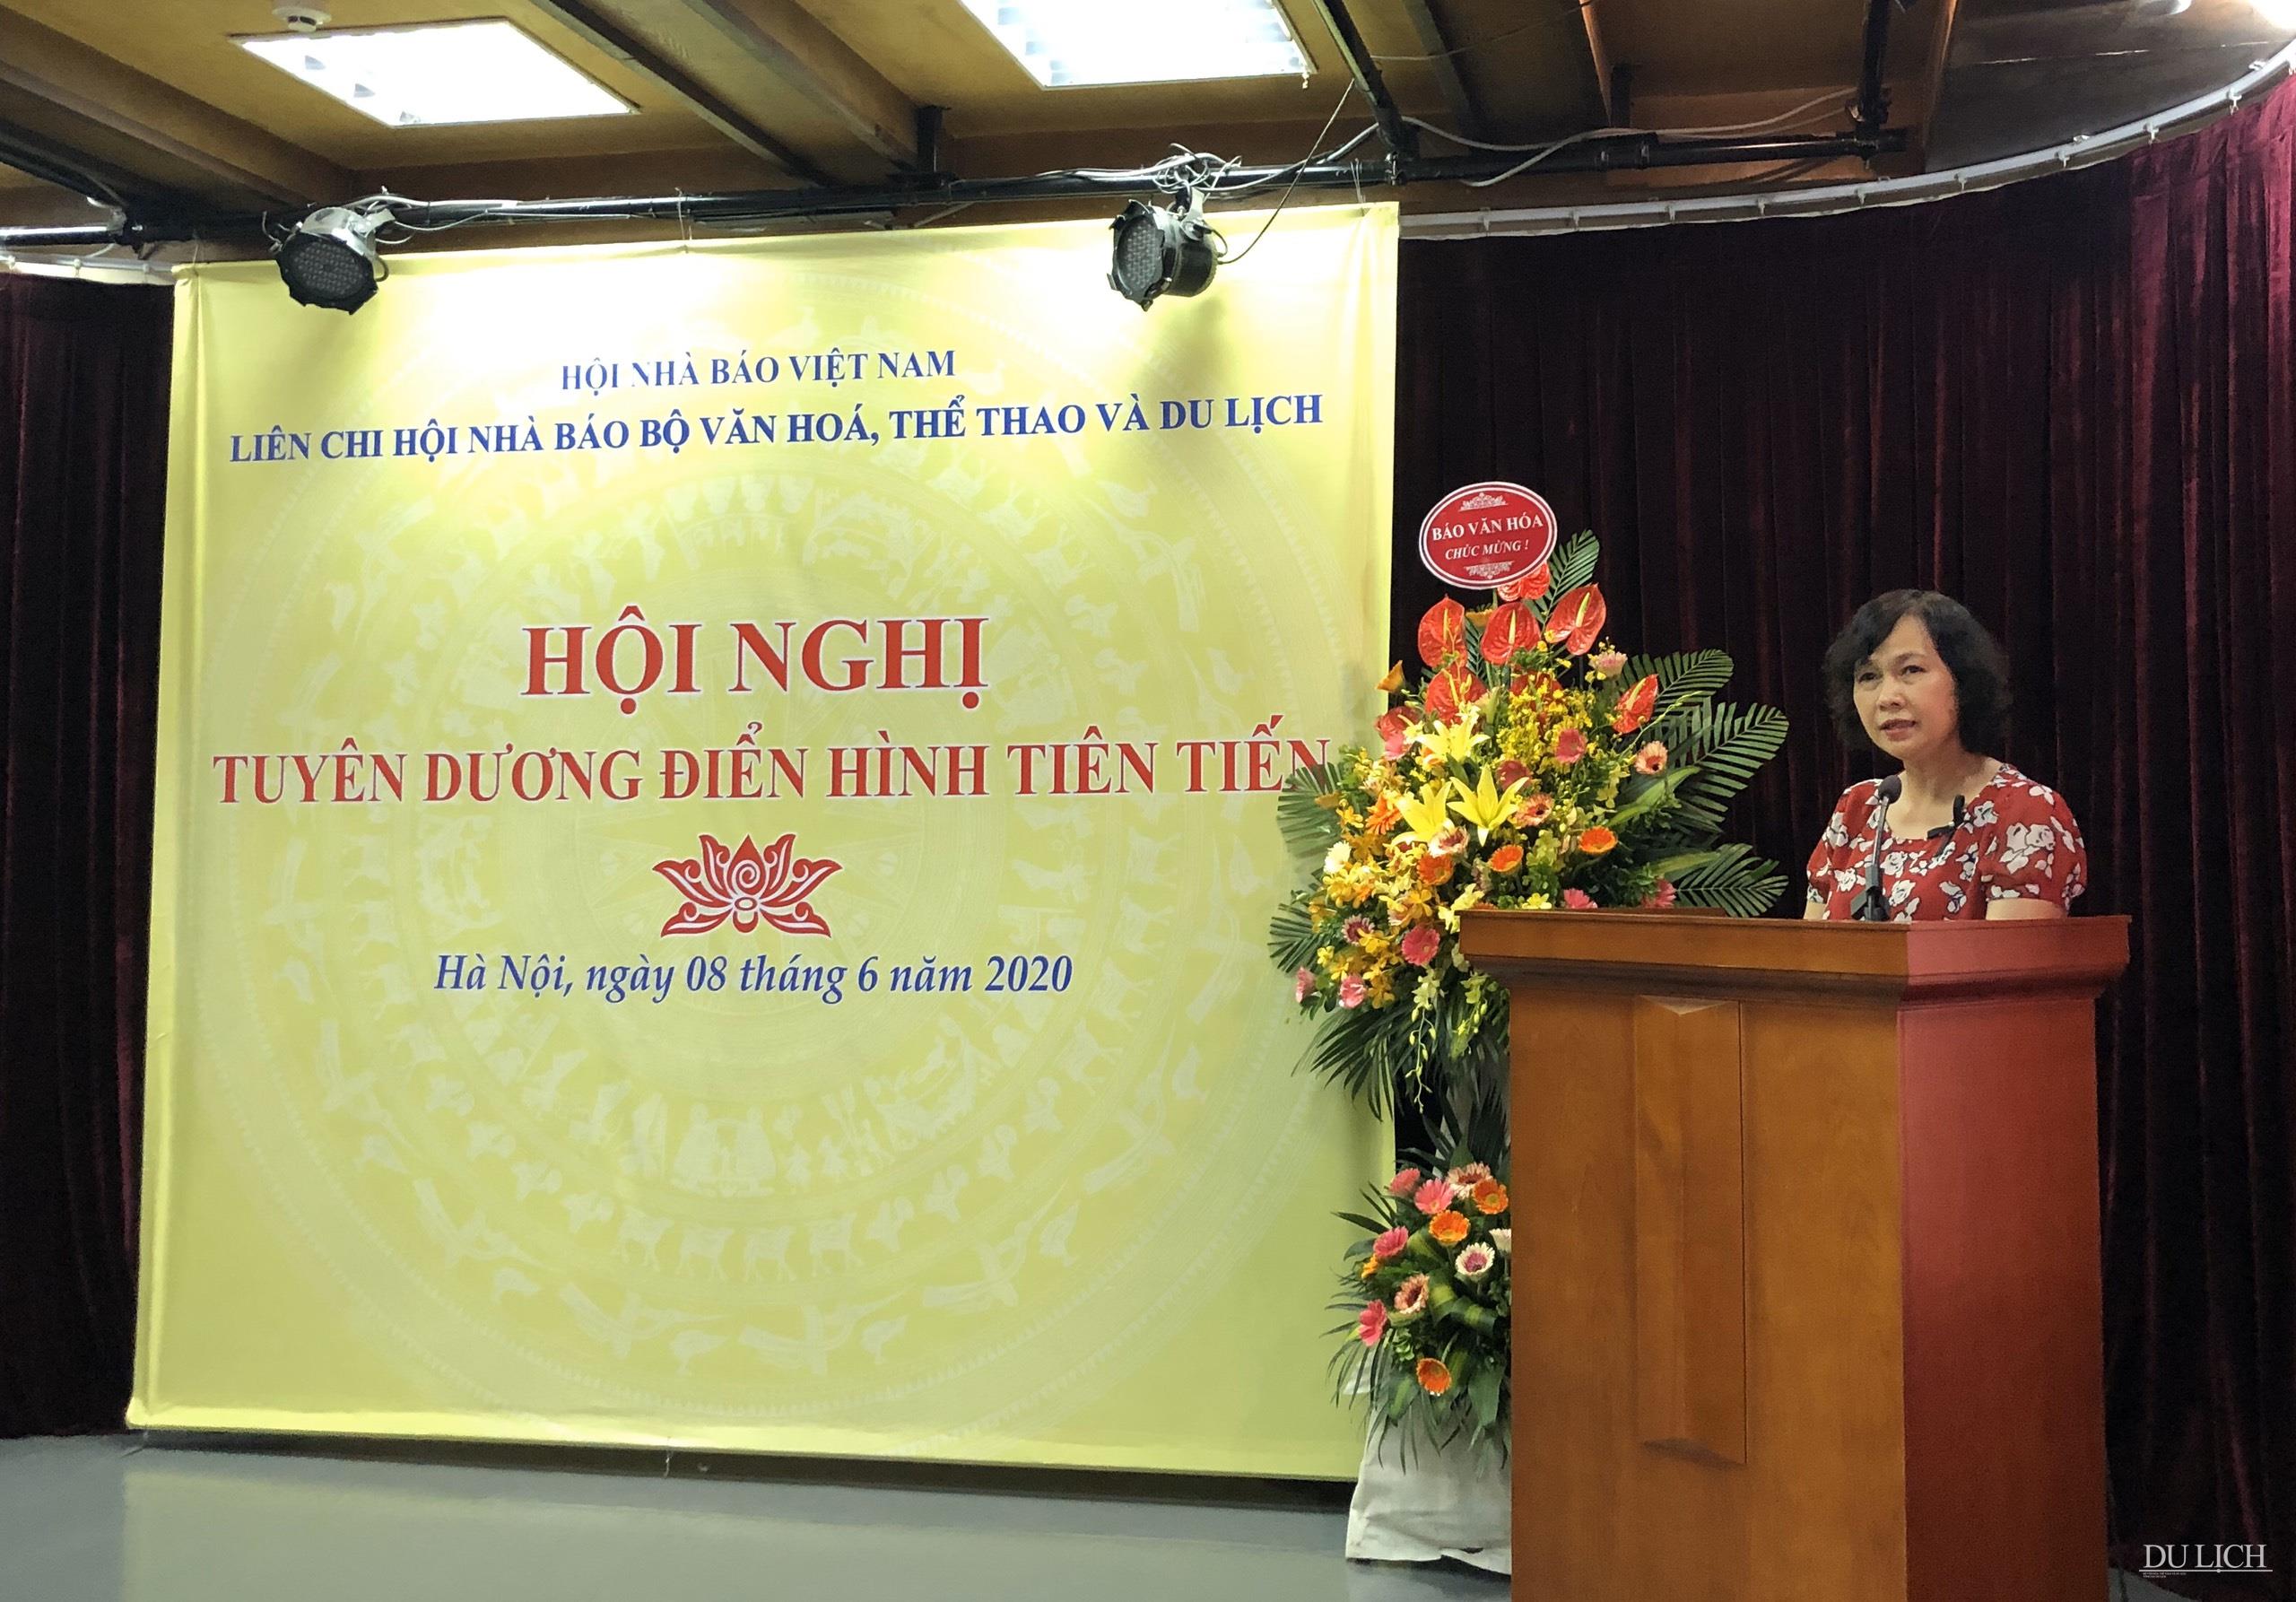 Bà Hà Thị Hồng Dương - Ủy viên Ban Chấp hành, Trưởng ban Công tác hội, Hội Nhà báo Việt Nam phát biểu tại Hội nghị